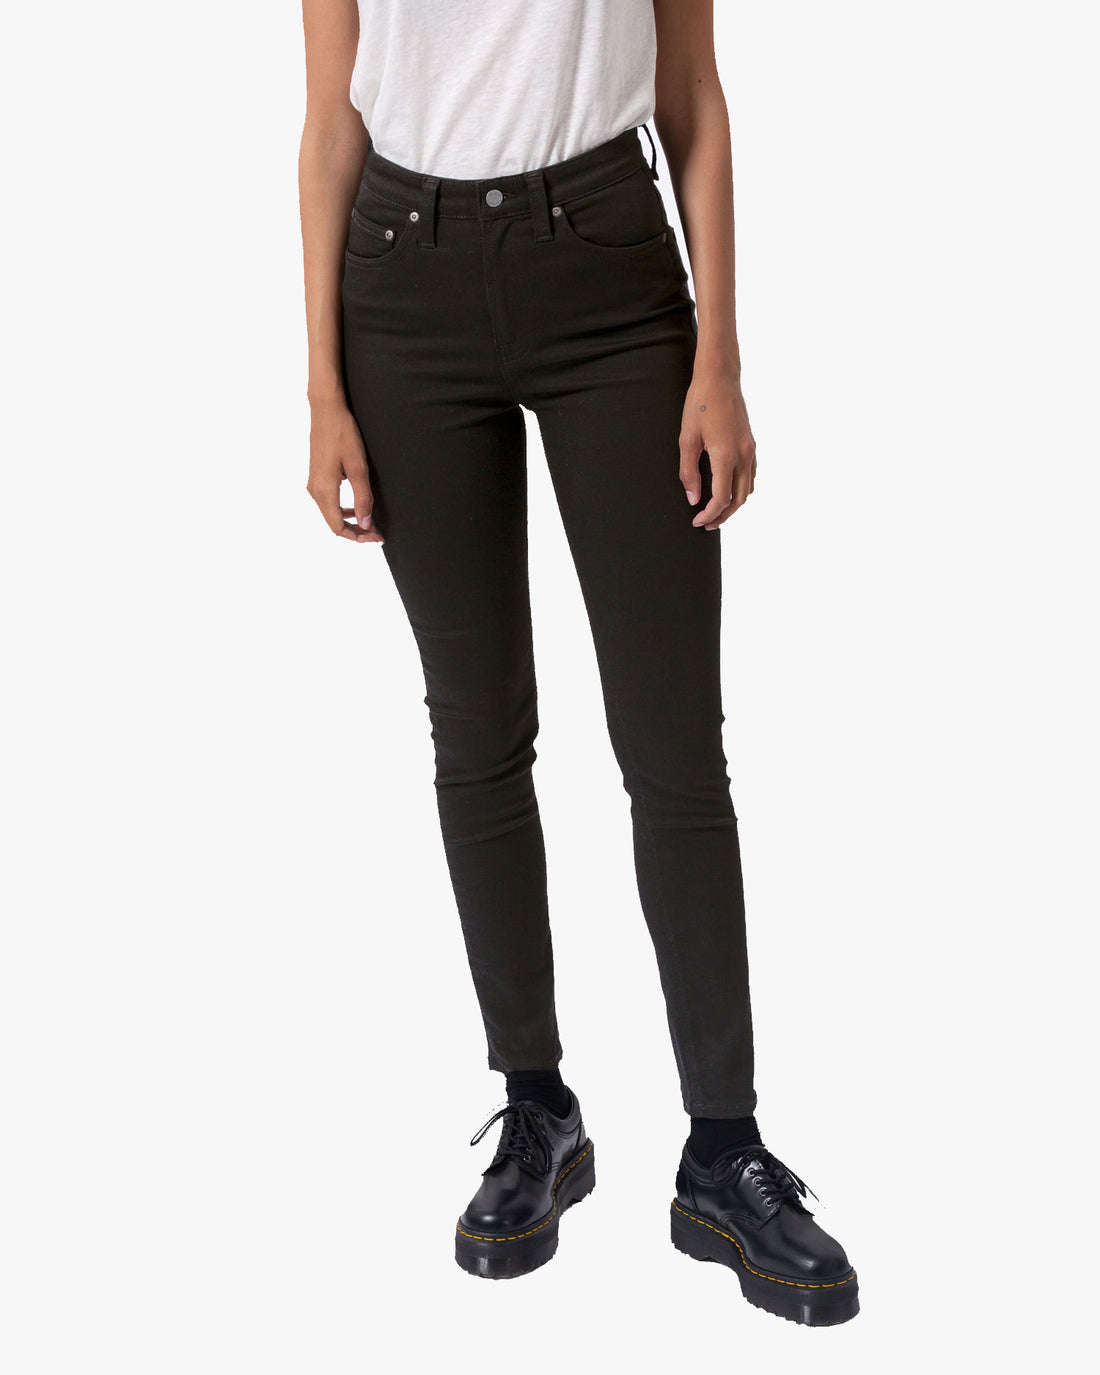 Nudie Hightop Tilde High Rise Skinny Jeans - Everblack | JEANSTORE